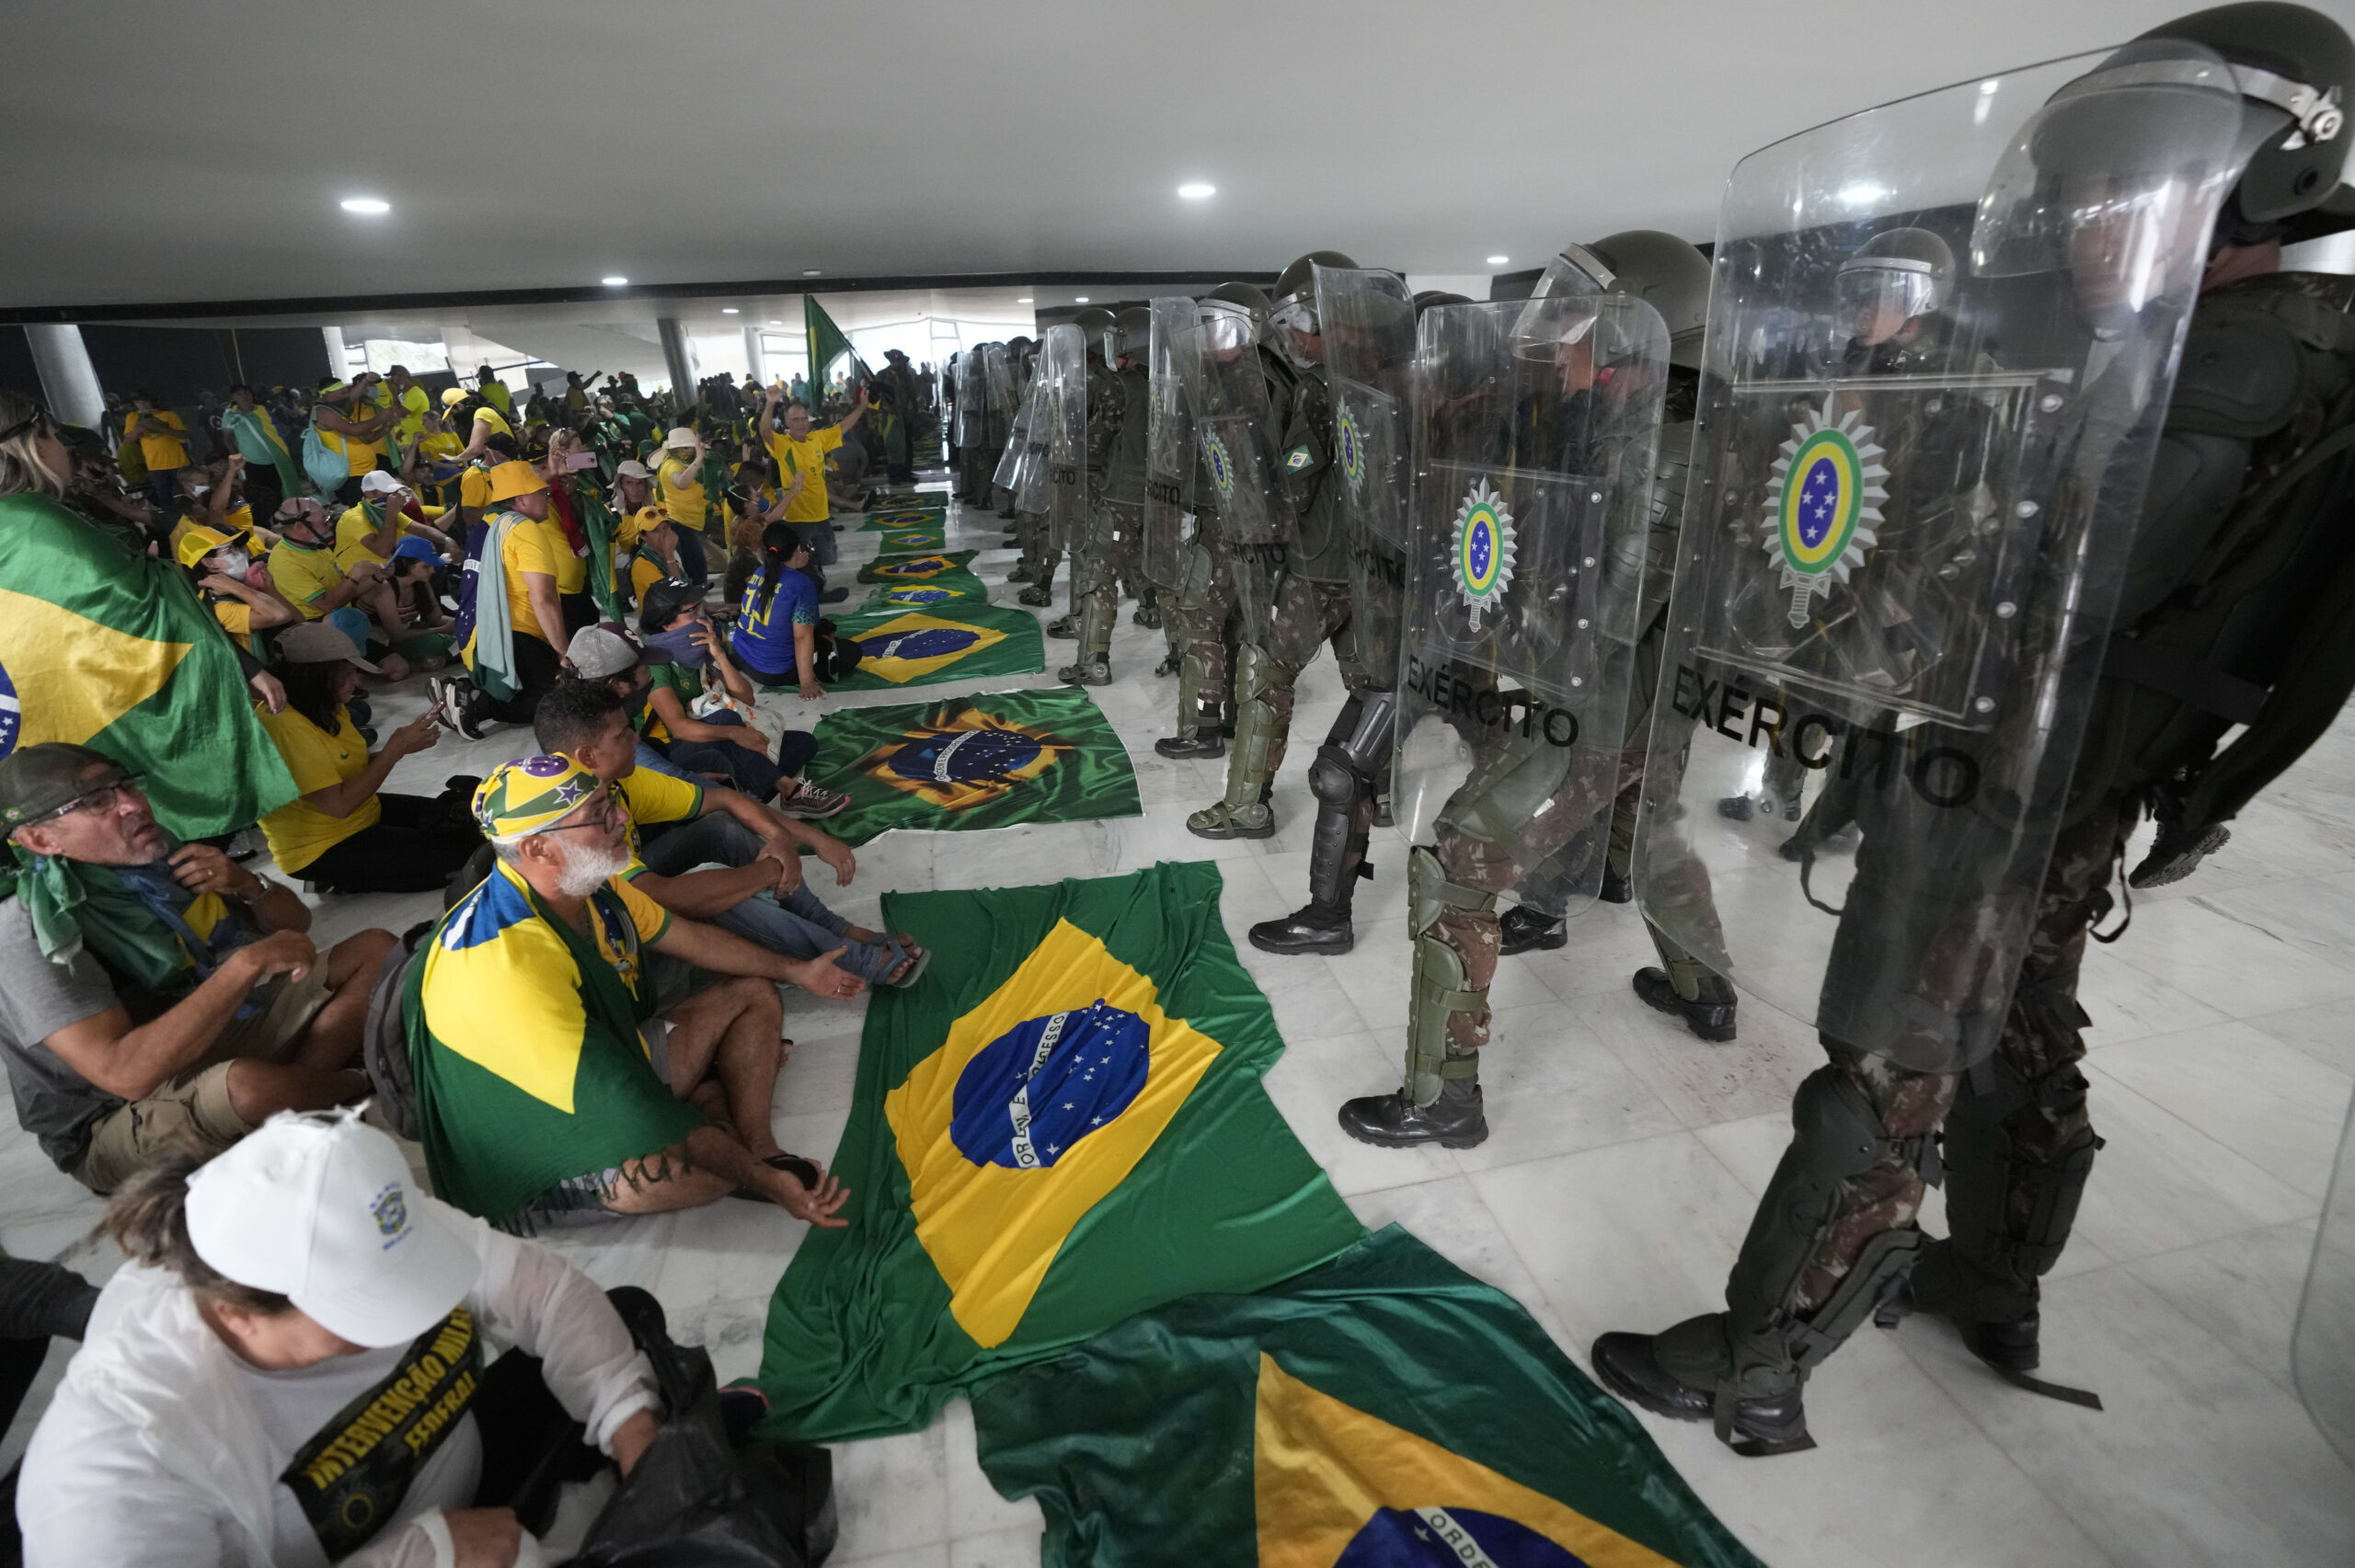 Brazil protest